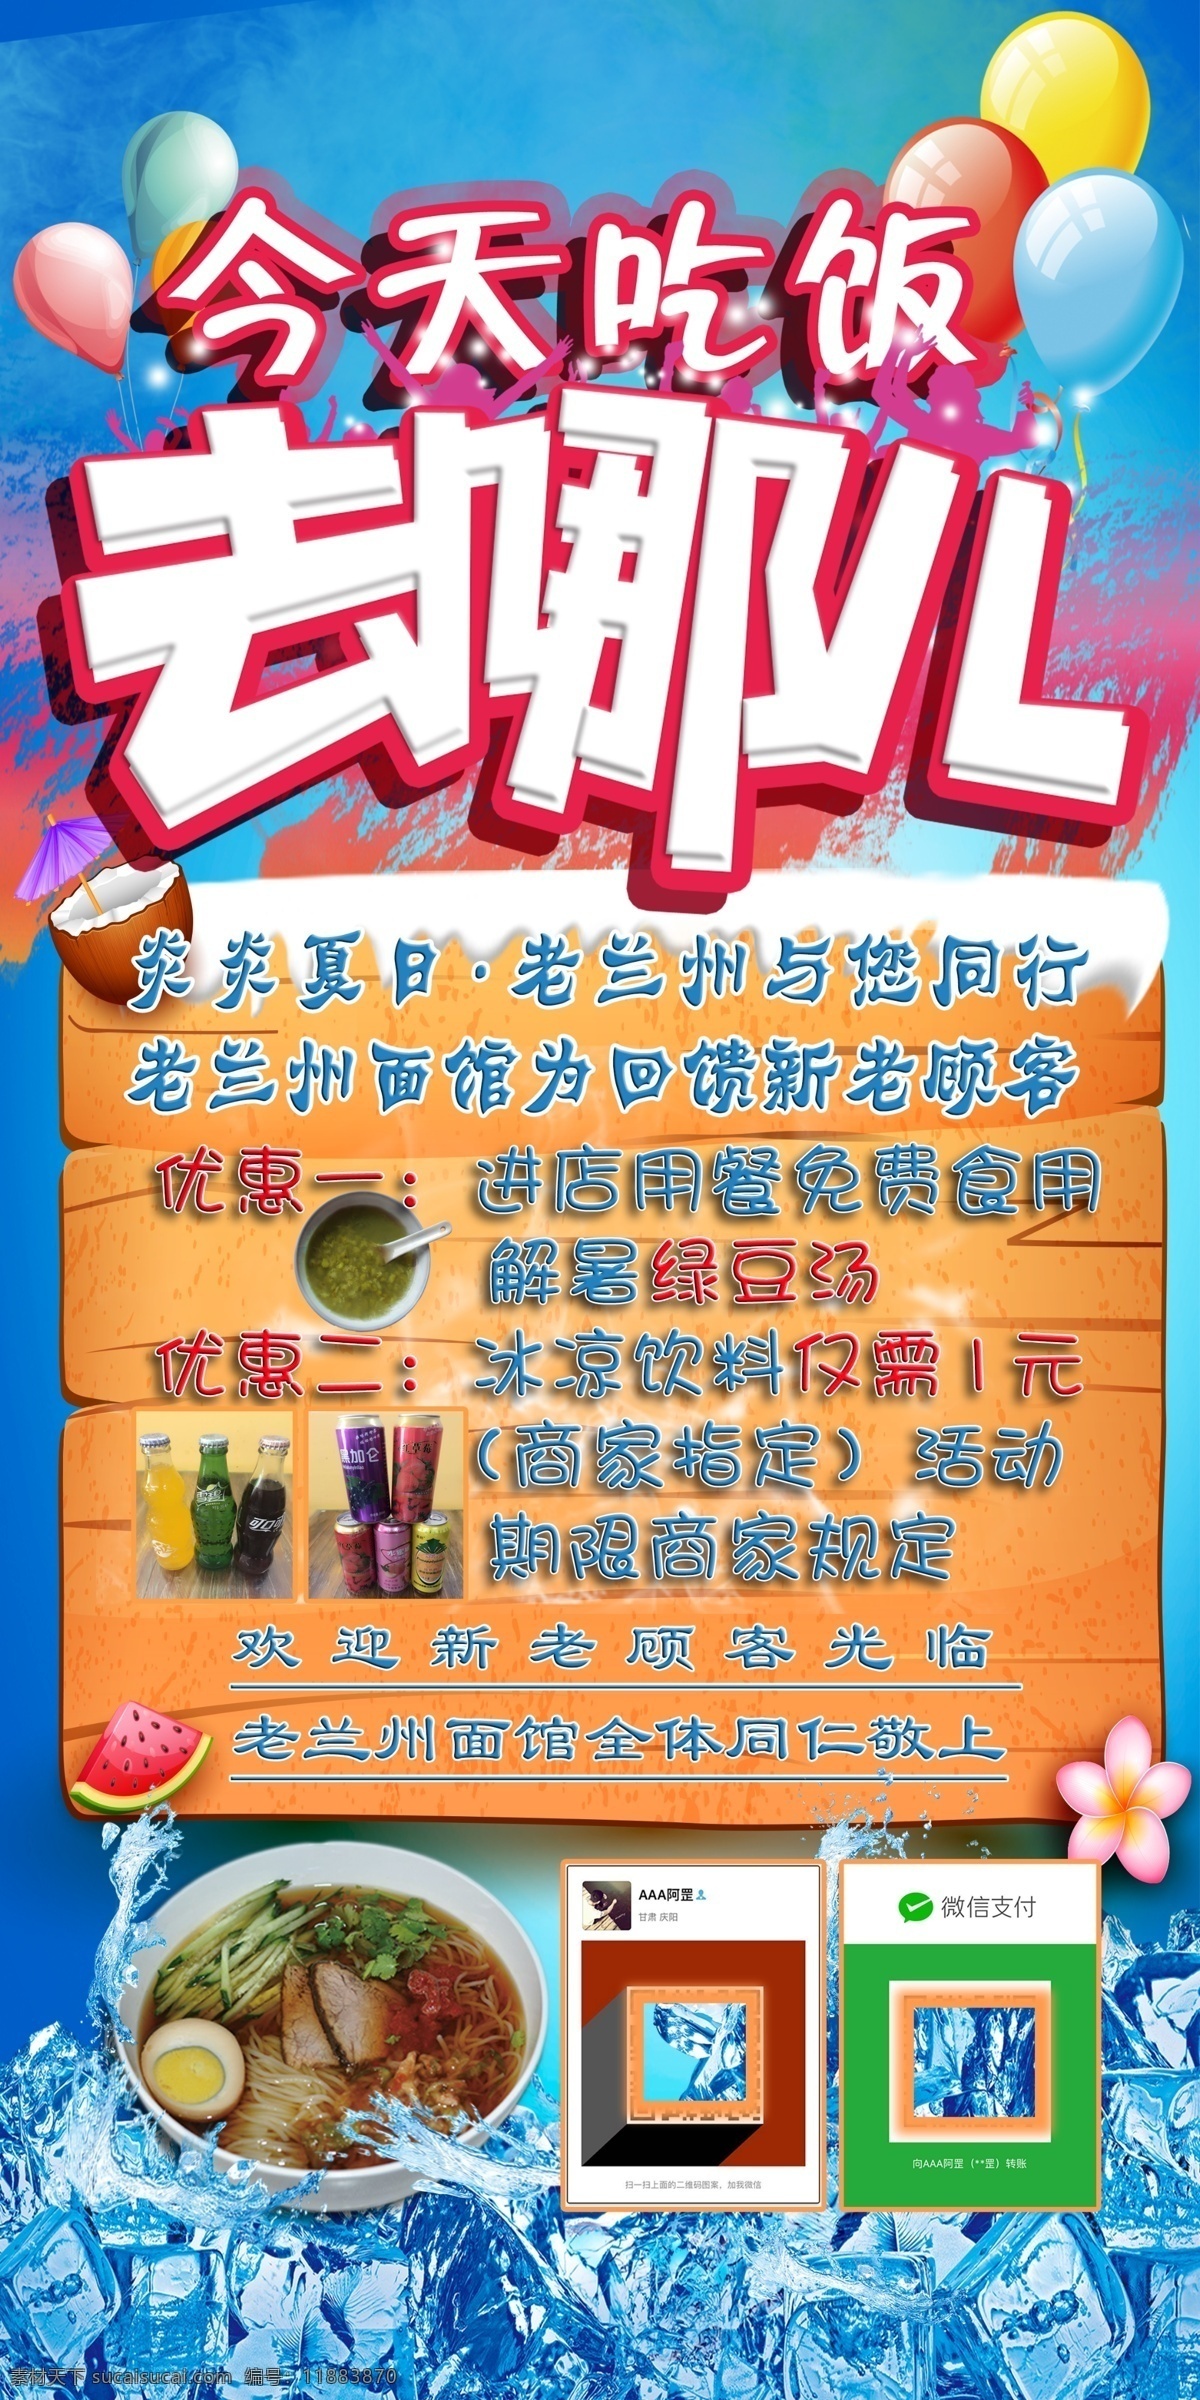 老面馆 海报 模板 打折促销 优惠 绿豆汤 炎炎夏日